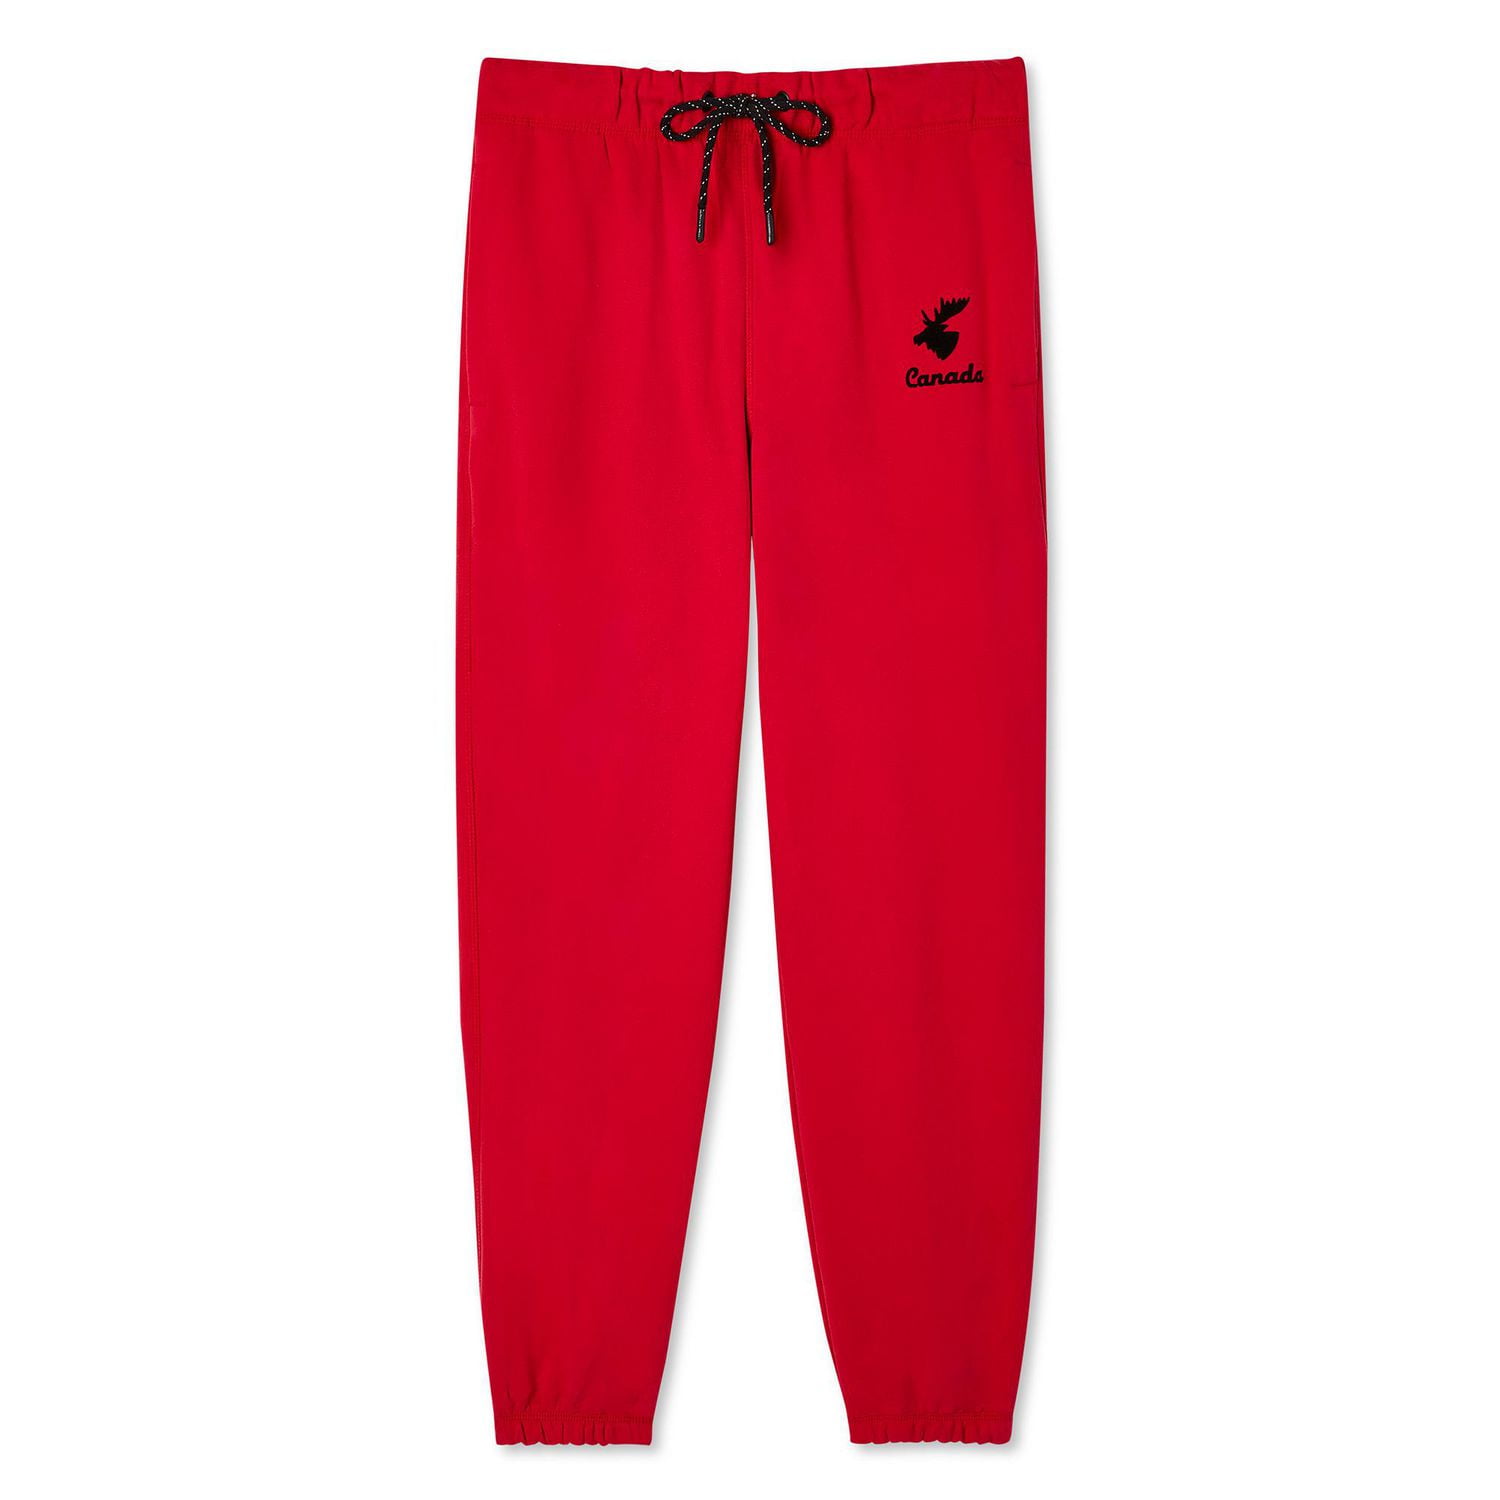 COLUMBIA Sportswear Trek JOGGERS Red SWEATPANTS Womens Size XXL /2XL  Regular NEW